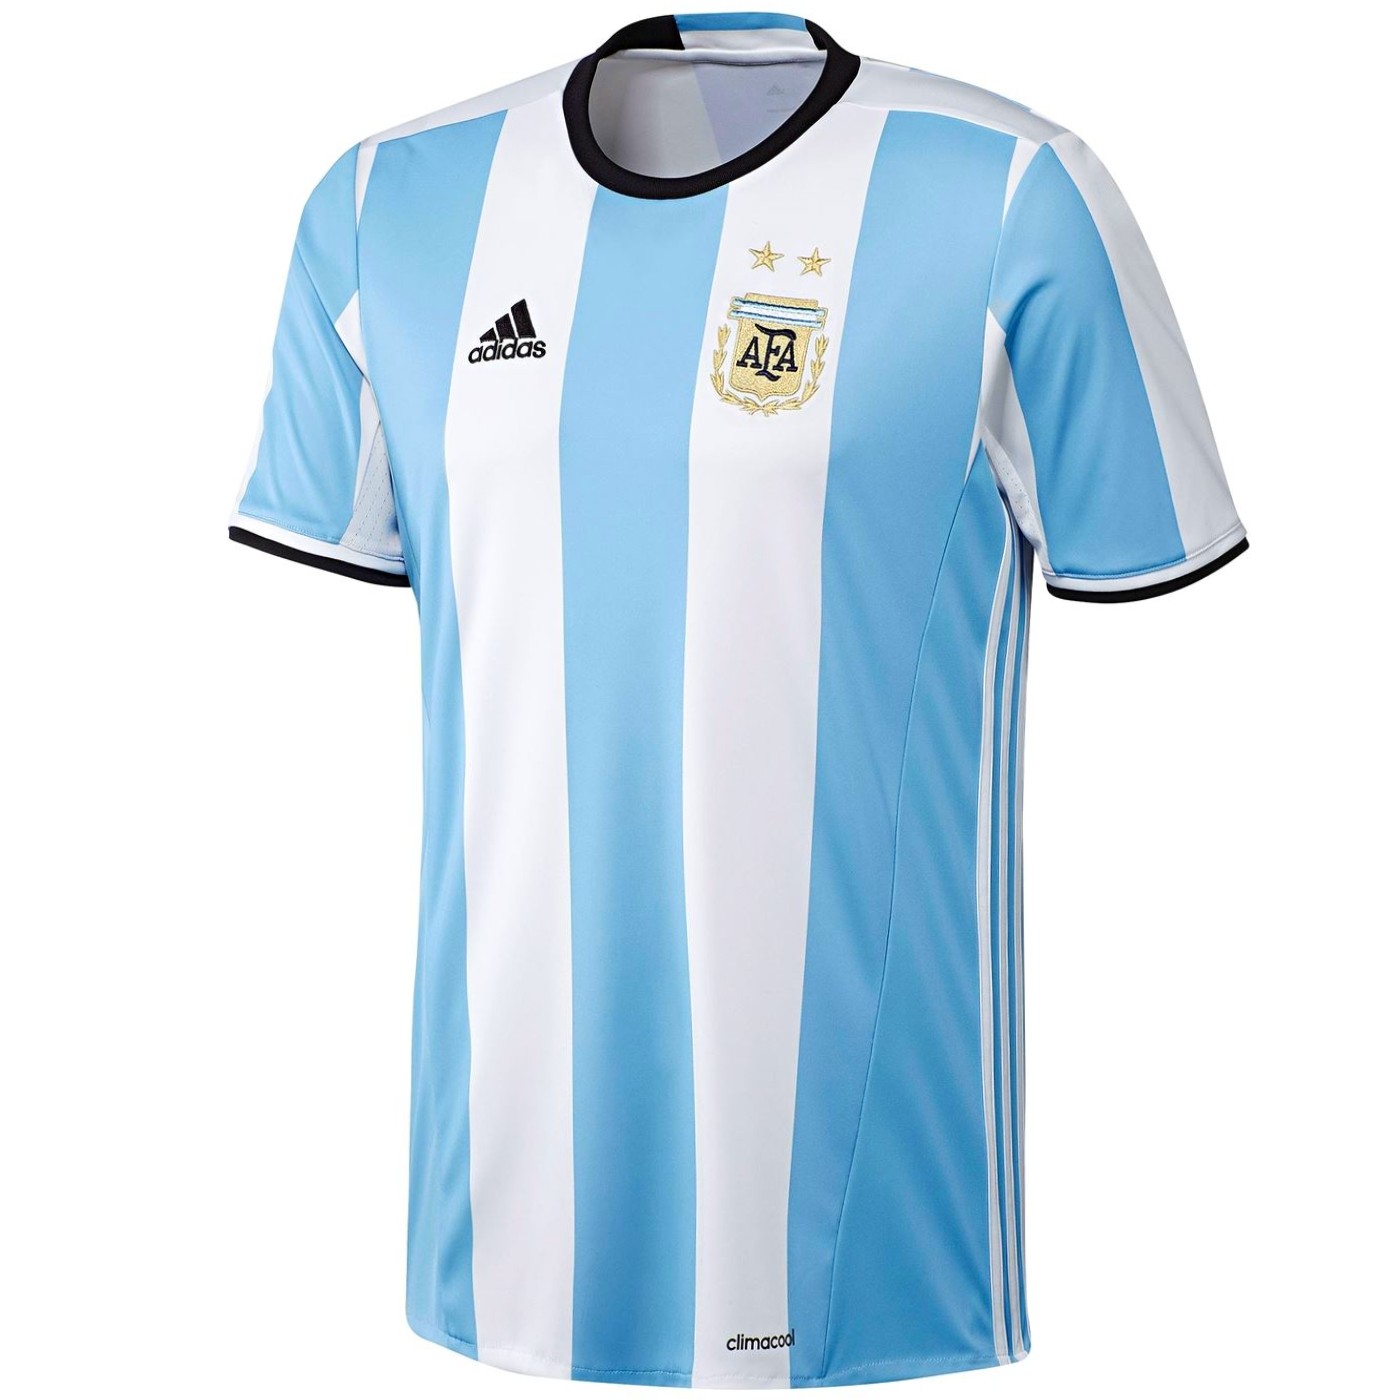 Maglia calcio Nazionale Argentina Home 2016/17 - Adidas - SportingPlus.net